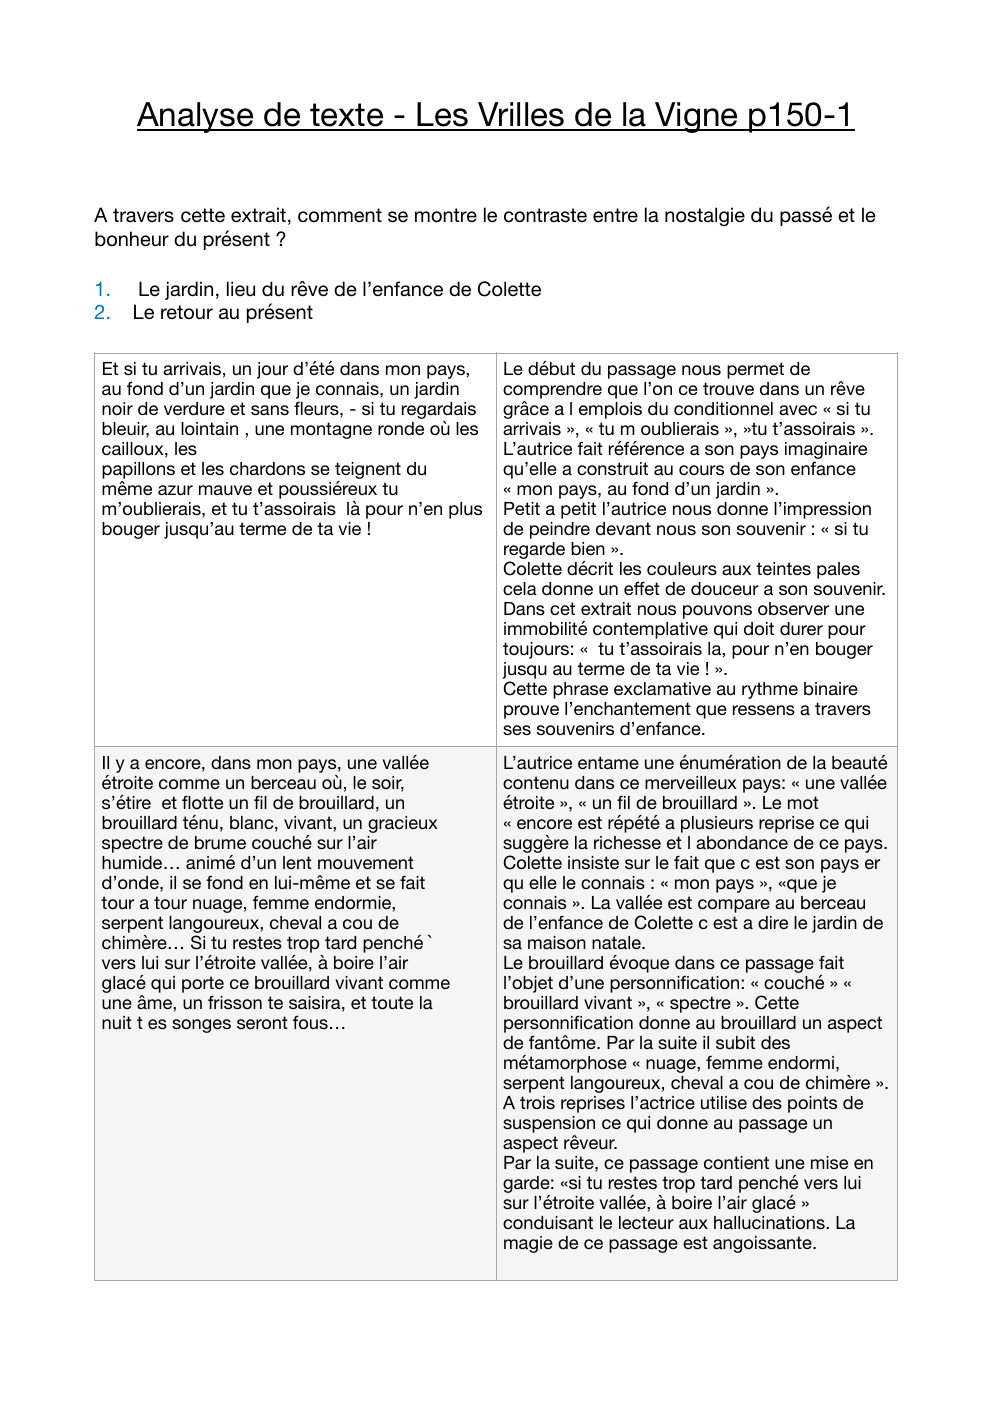 Prévisualisation du document Analyse linéaire des vrilles de la vignes de Colette p150-151